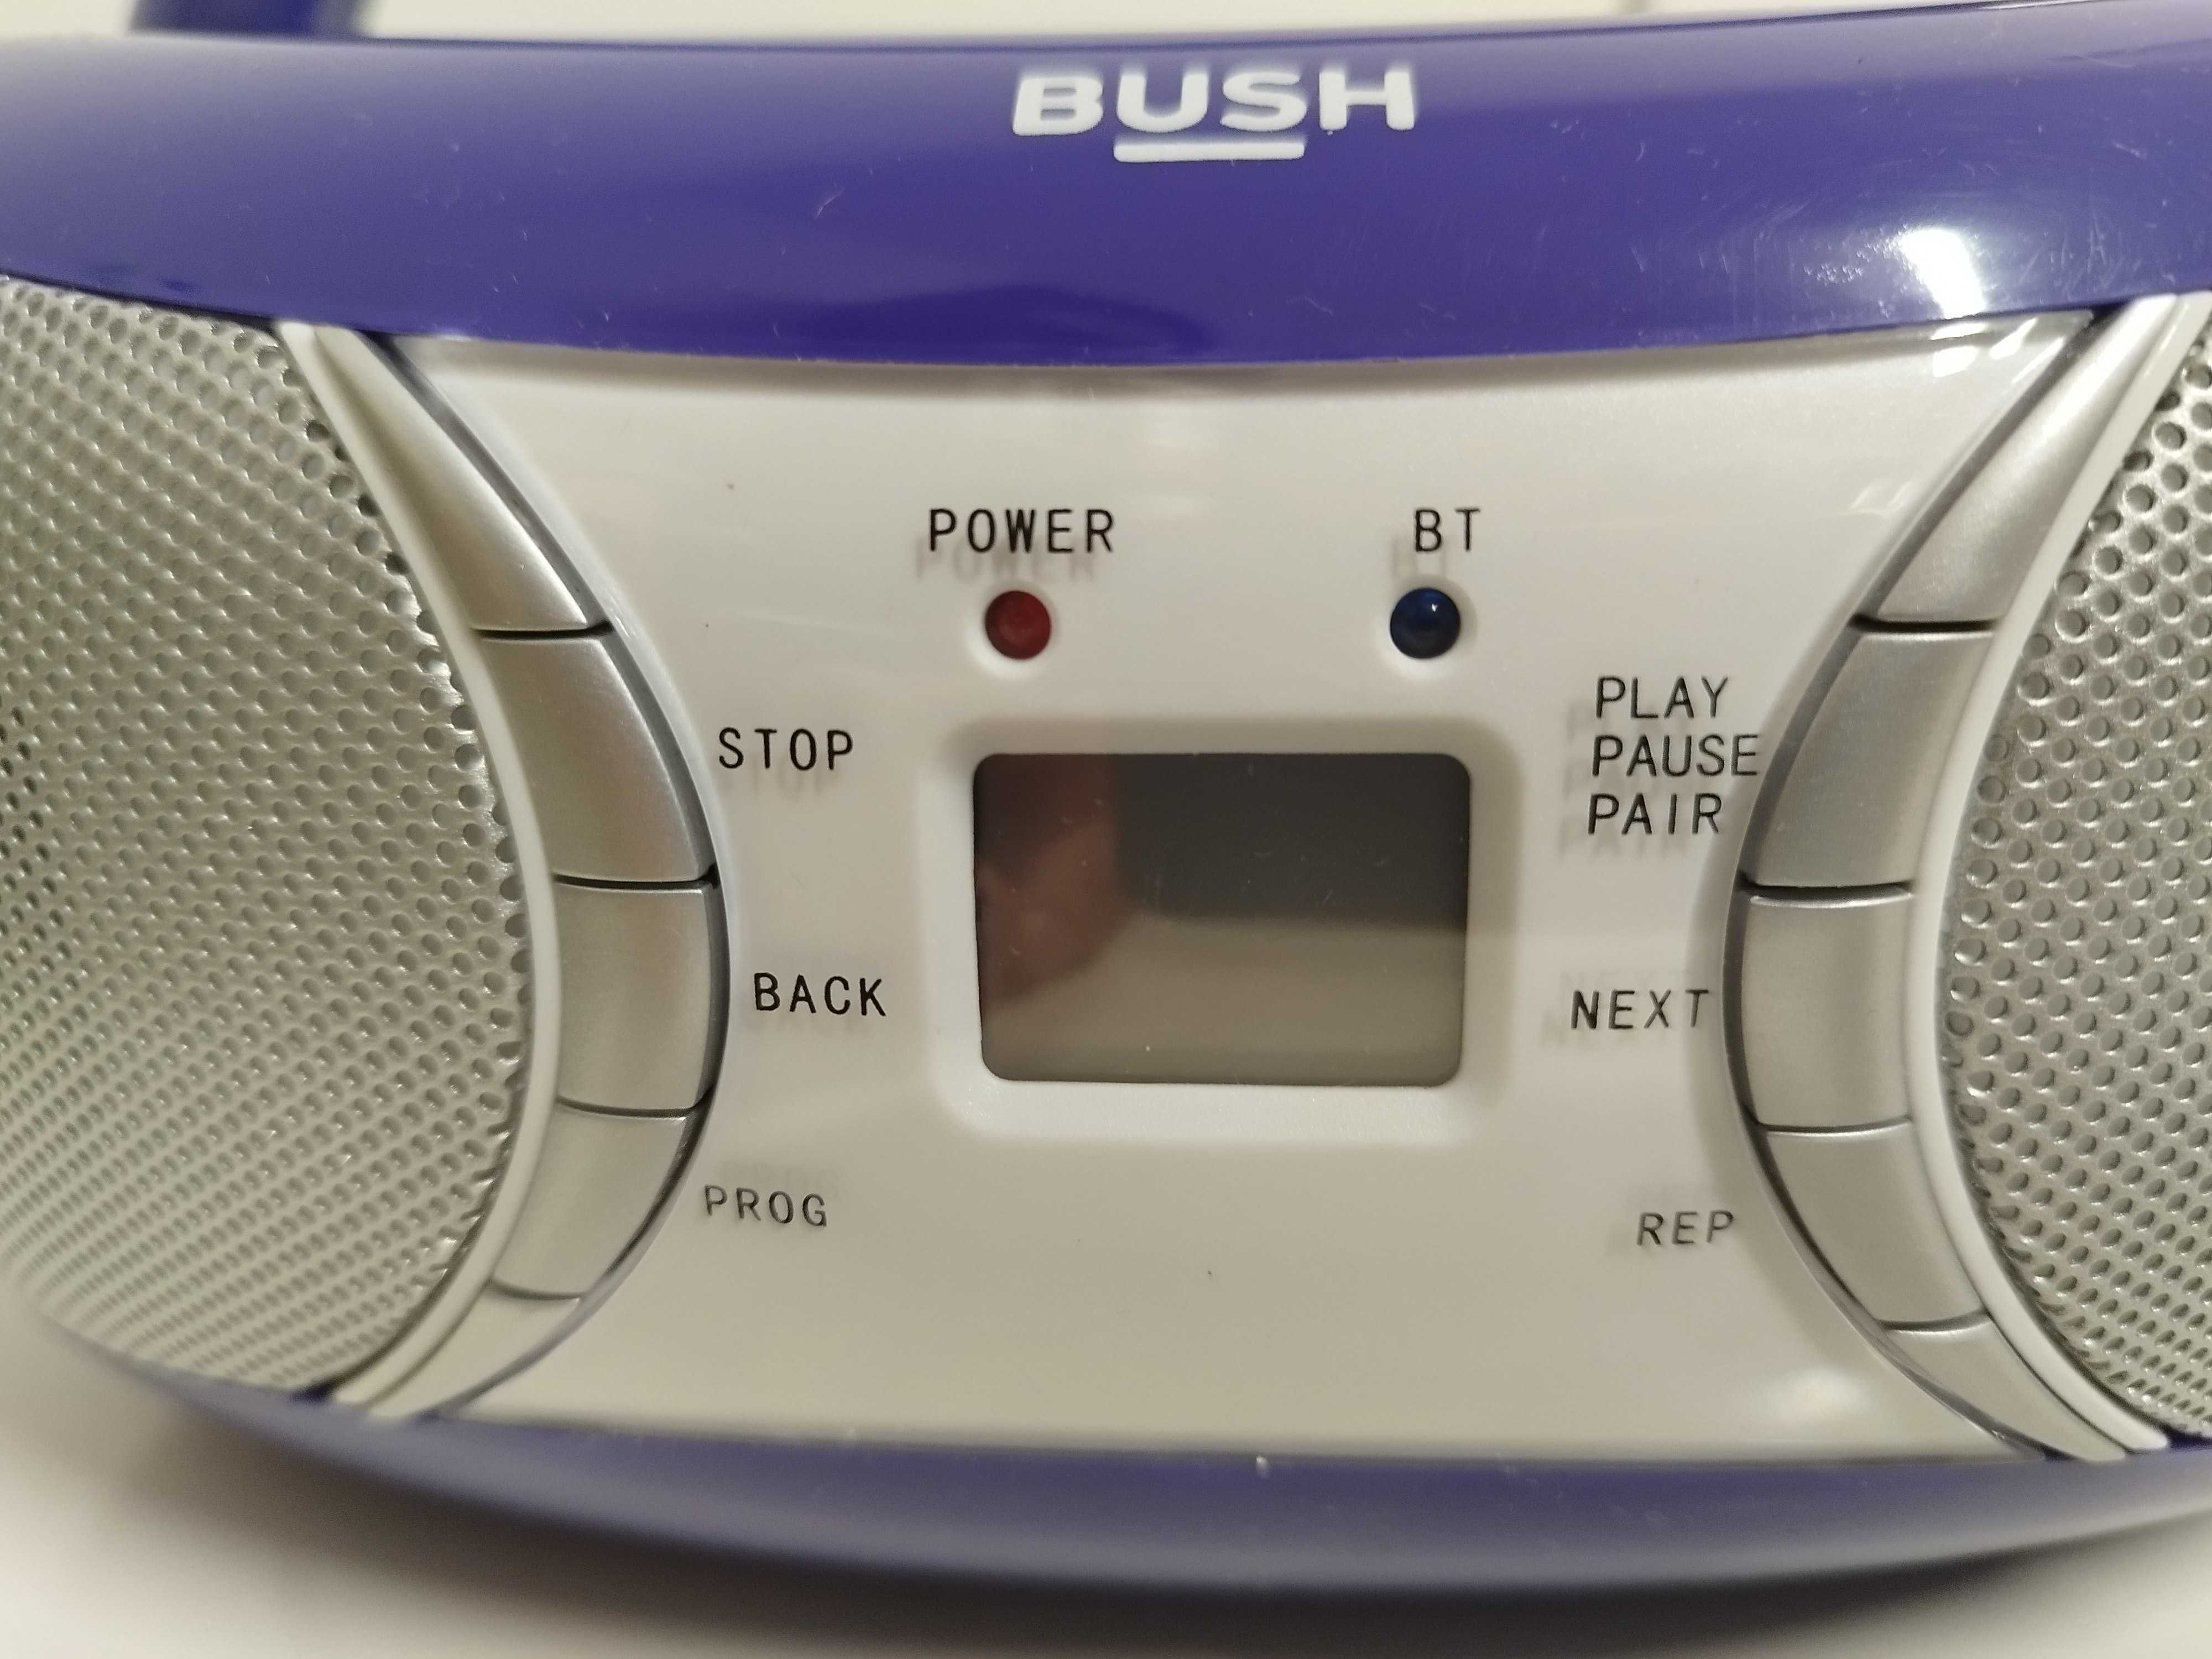 Radioodtwarzacz CD boombox Bush